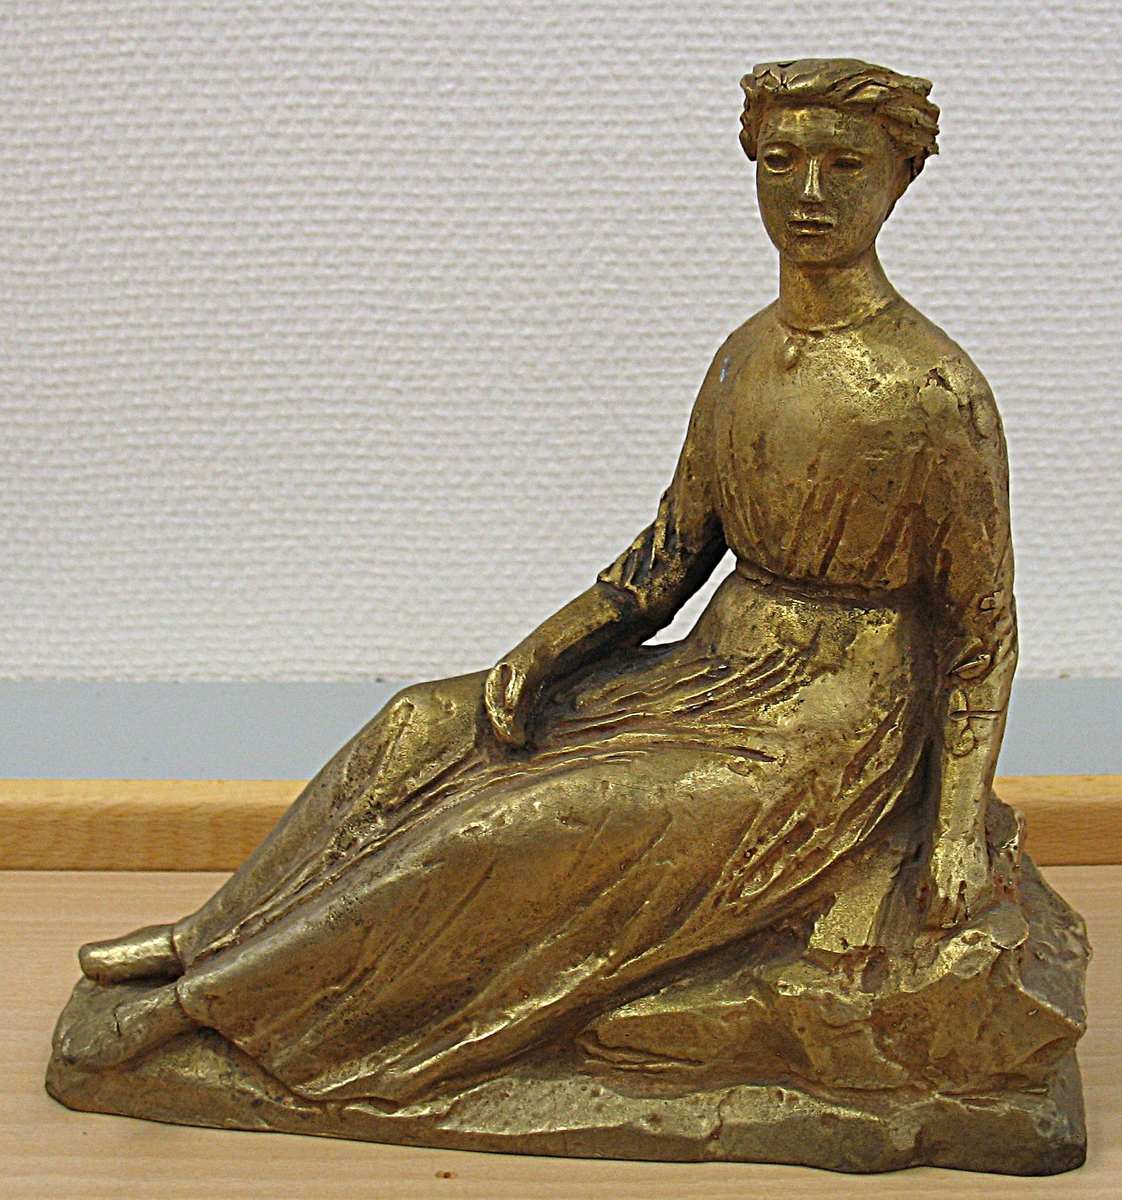 Statyett av Birger Sjöbergs ''Frida''. Statyetten är en förlaga till statyn Frida i Skräckleparken, Vänersborg.

Bilaga VM 17 212